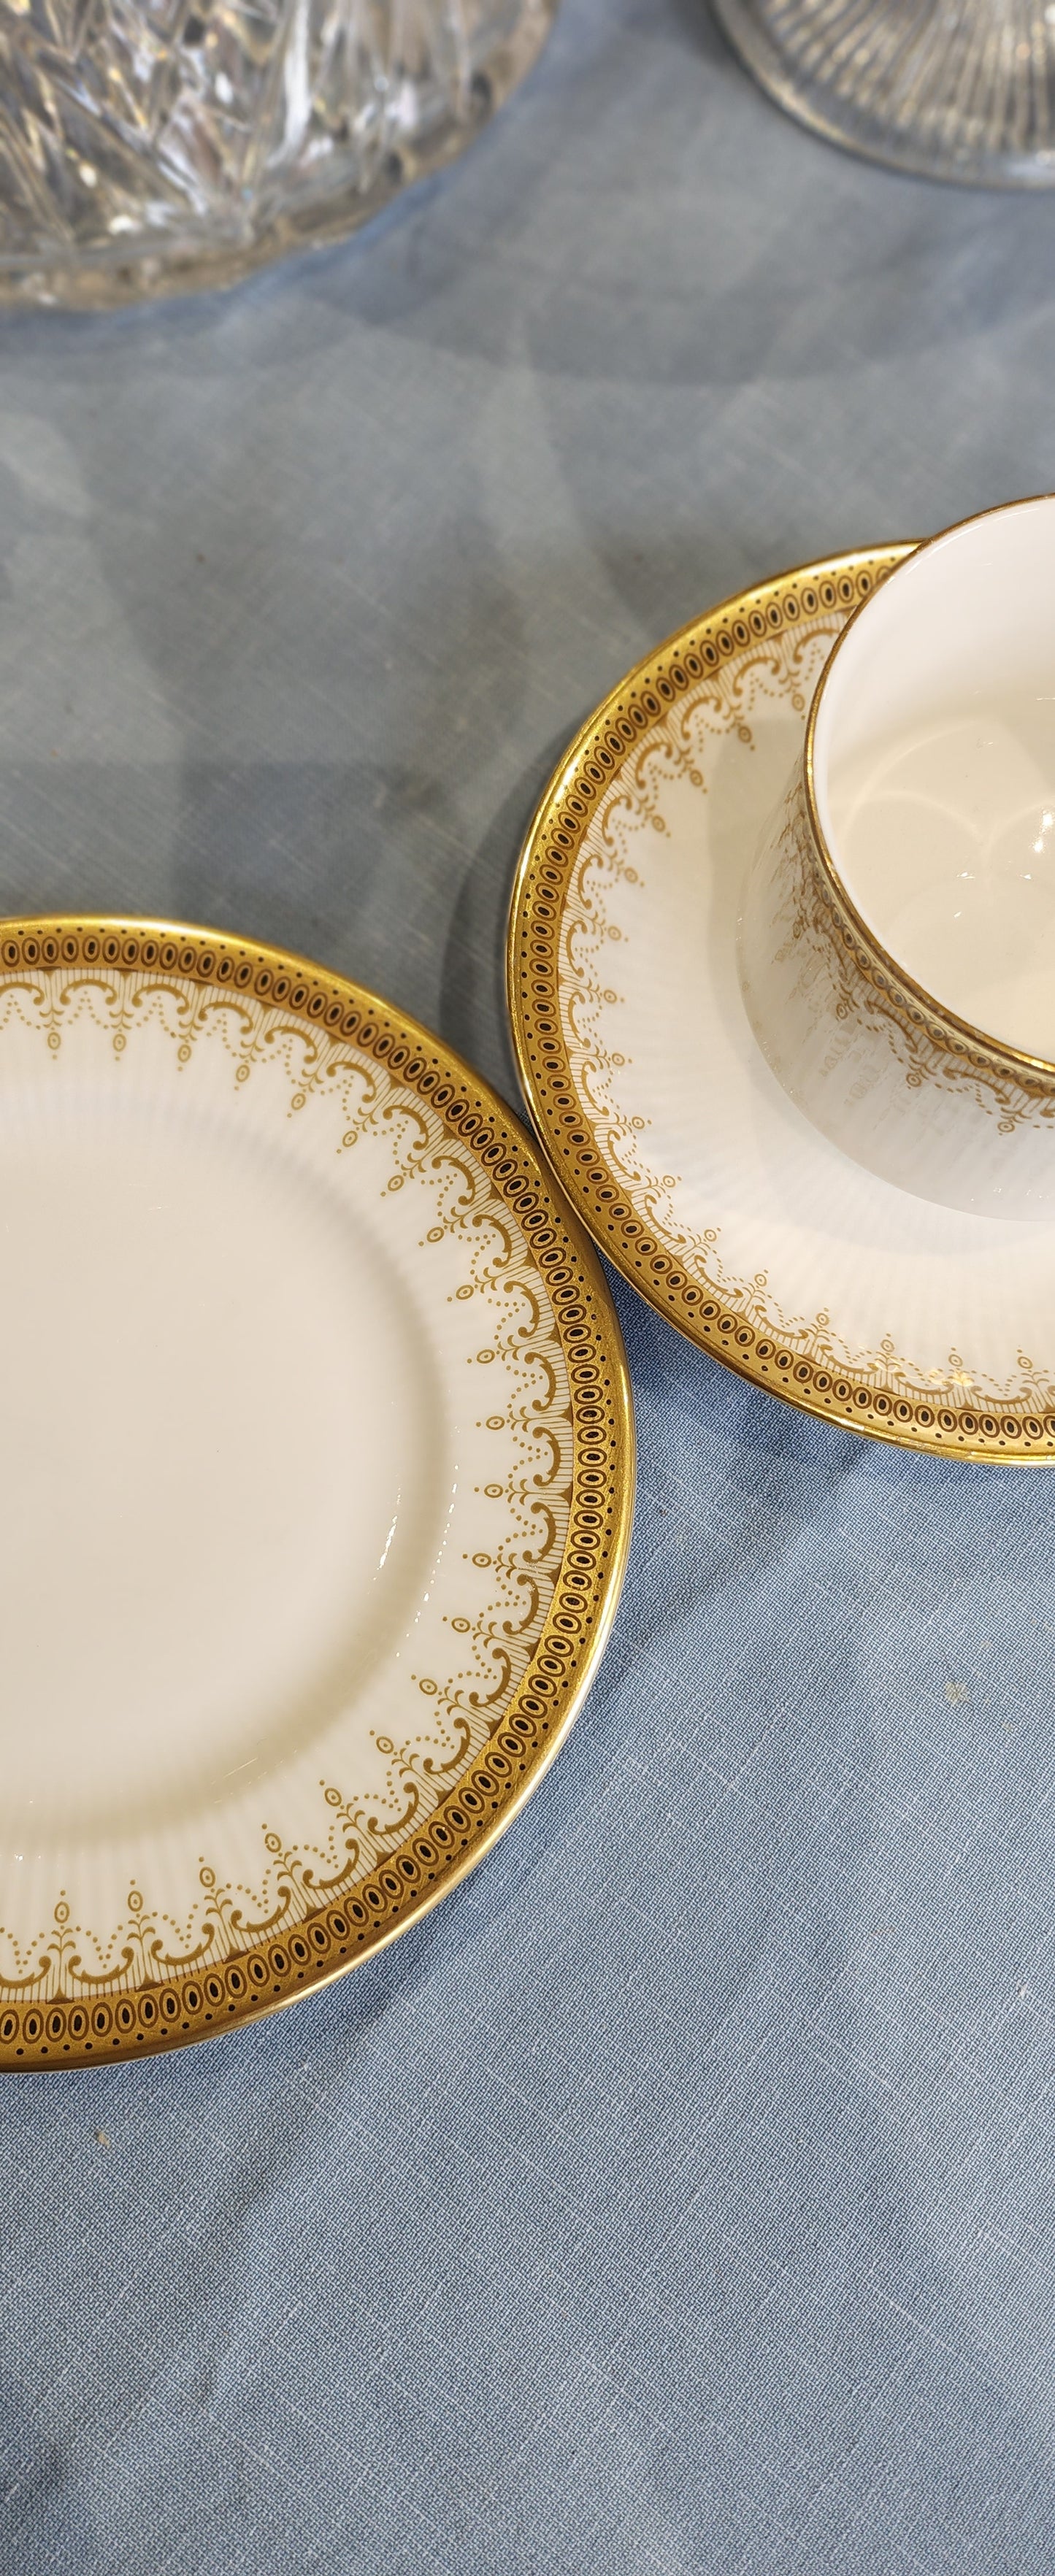 Glam Paragon Gold and white Athena Tea set